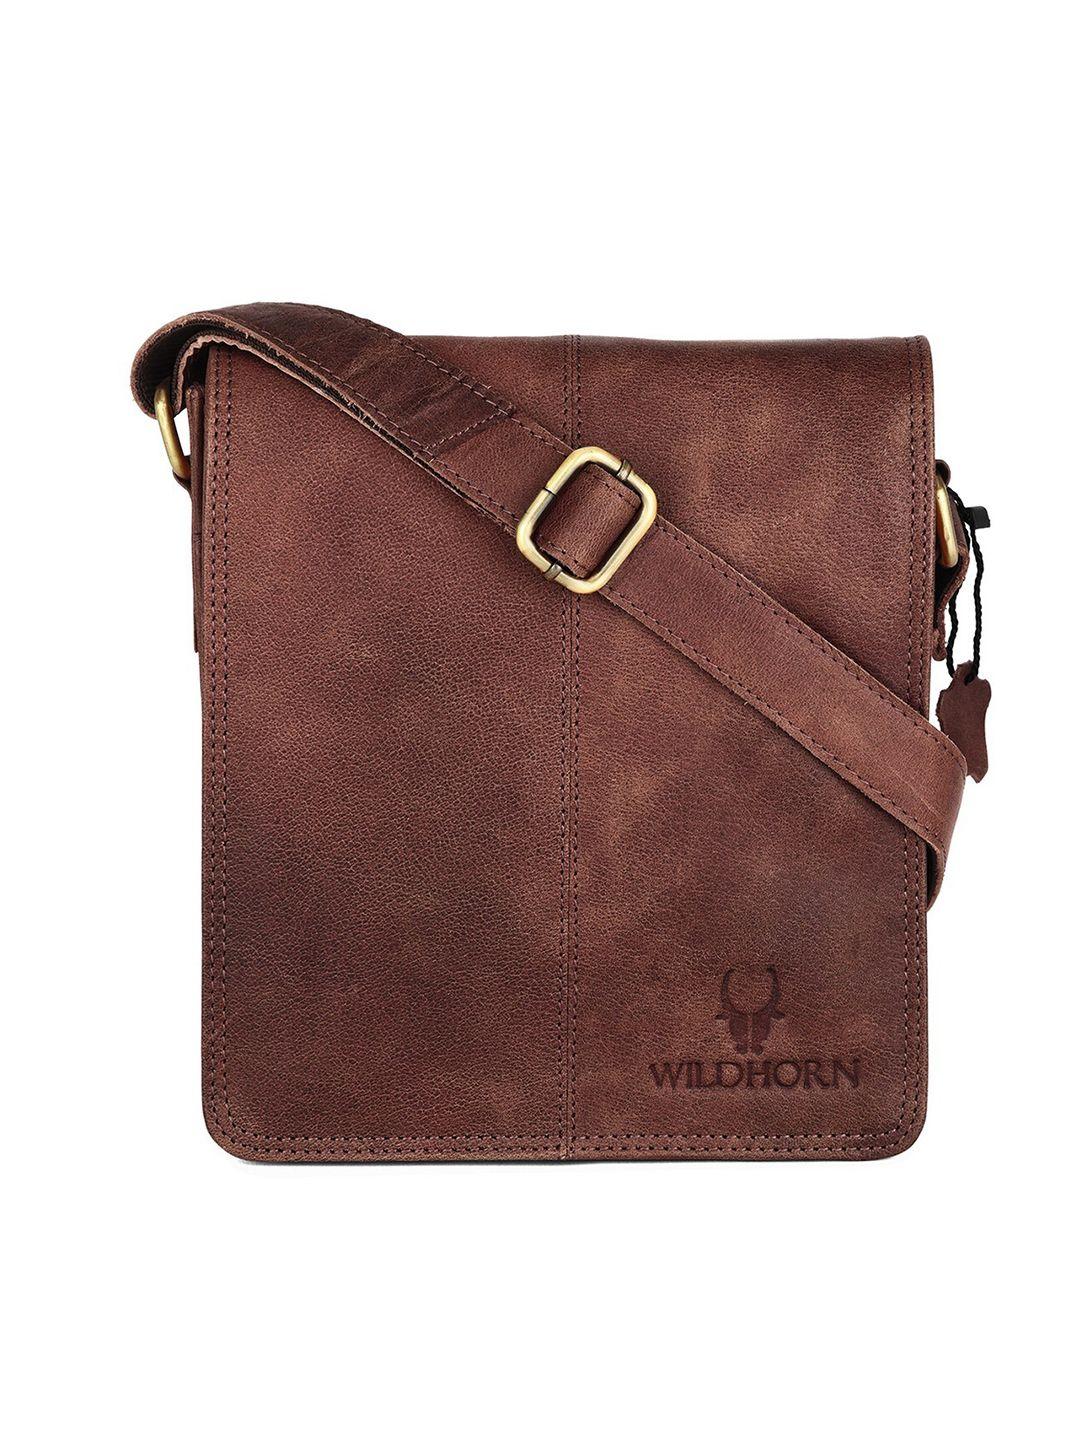 wildhorn men brown & gold-toned leather messenger bag